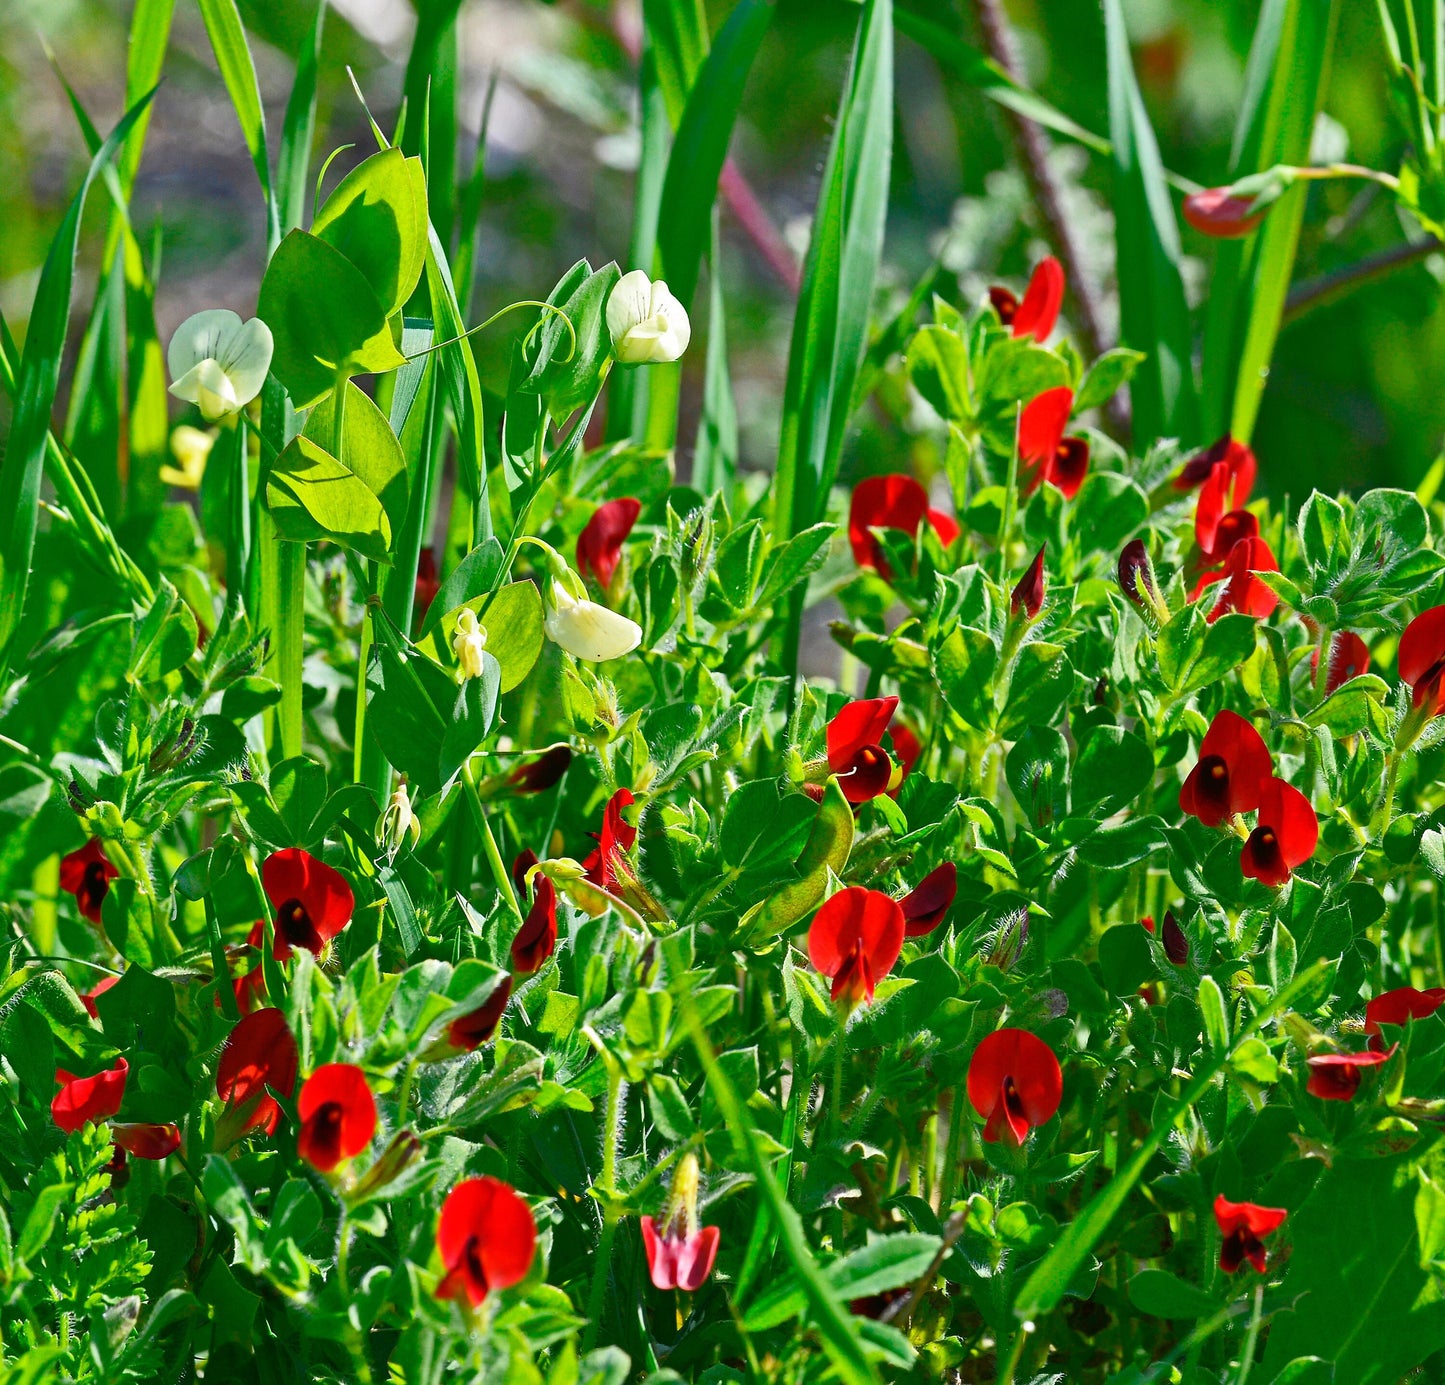 50 ASPARAGUS PEA Winged Pea Lotus Tetragonolobus Red Flower Legume Vegetable Seeds